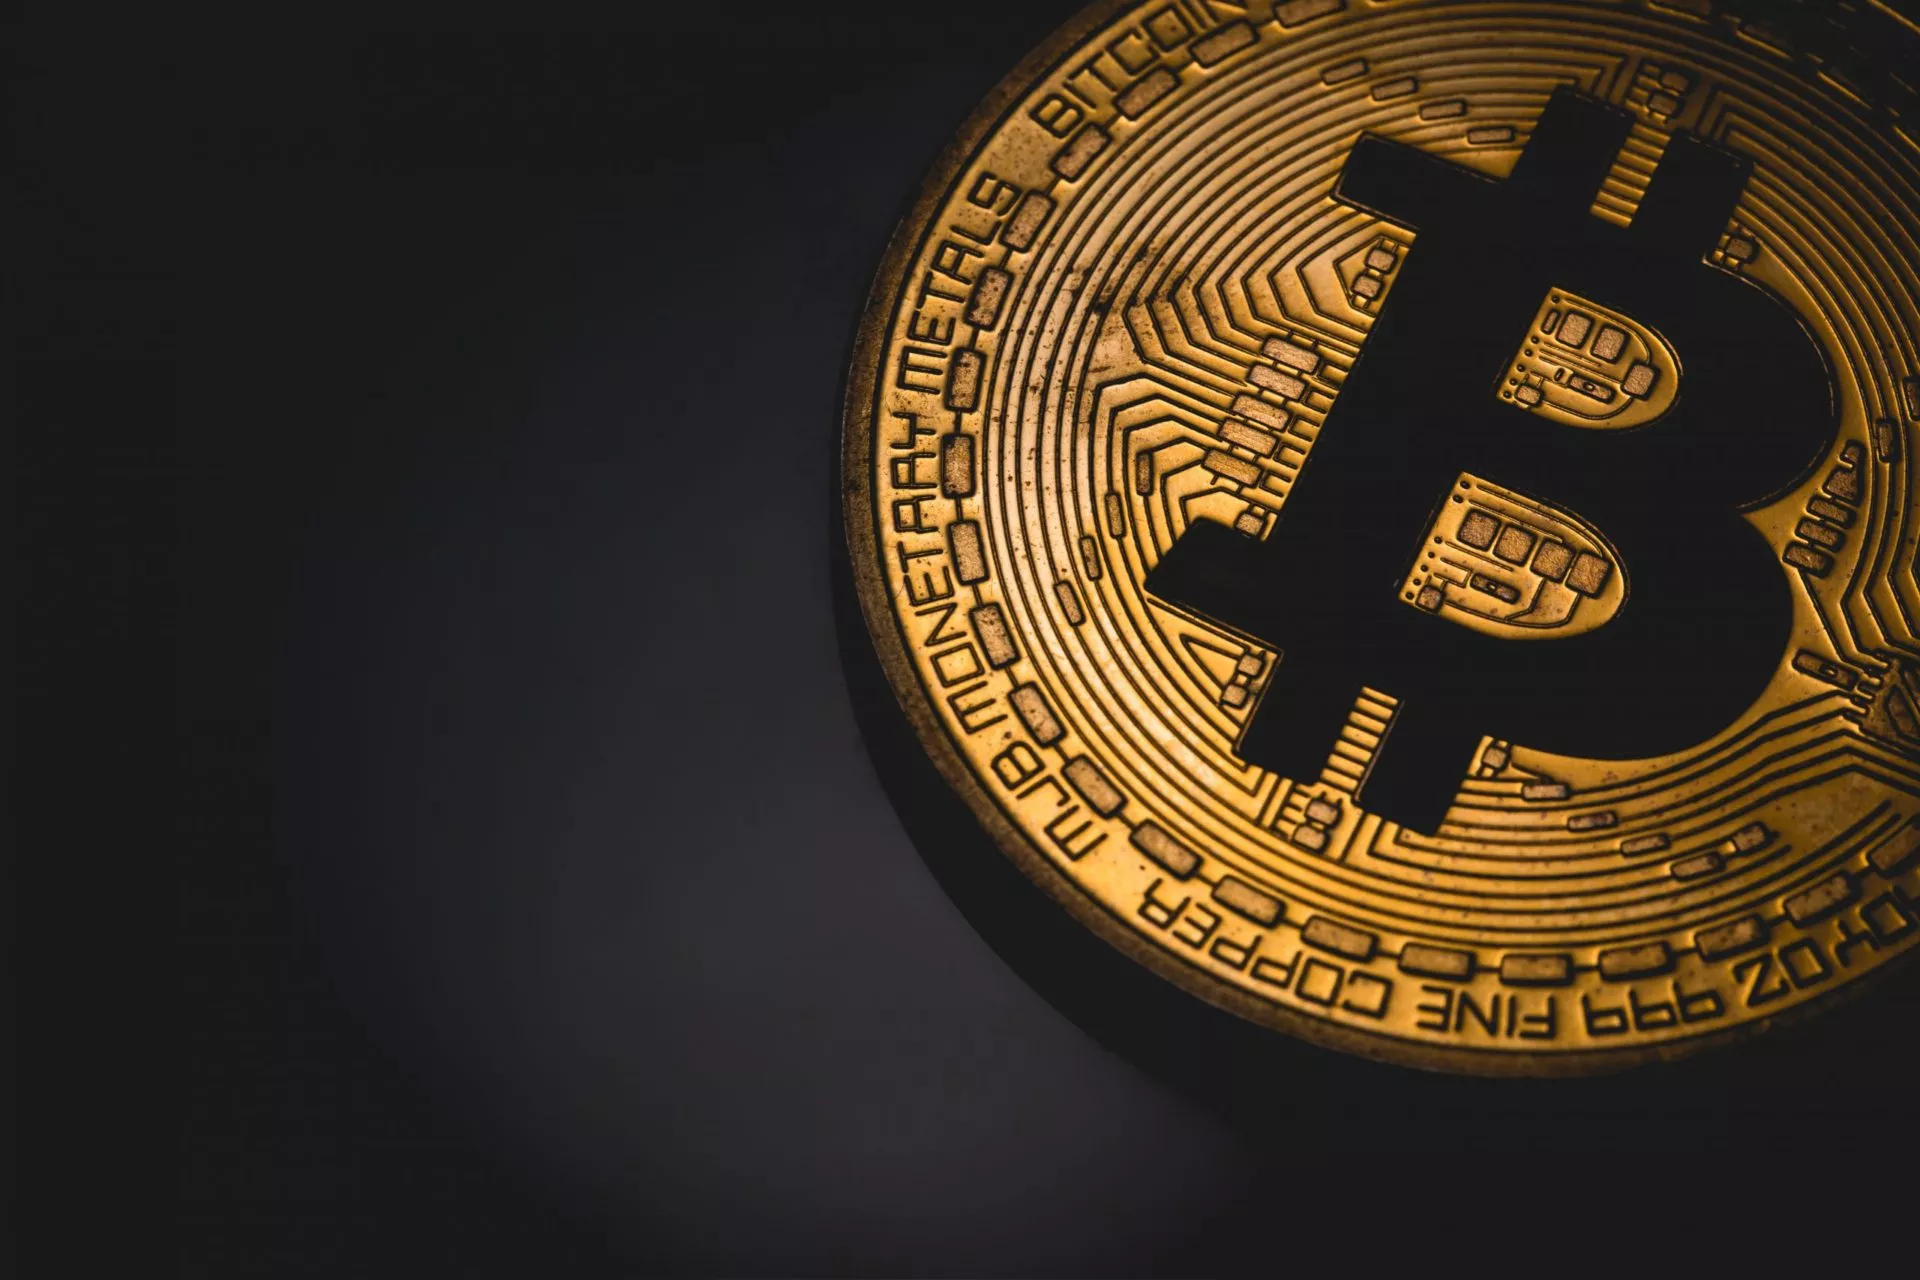 Chinese politie neemt 1% van het totale Bitcoin aanbod in beslag